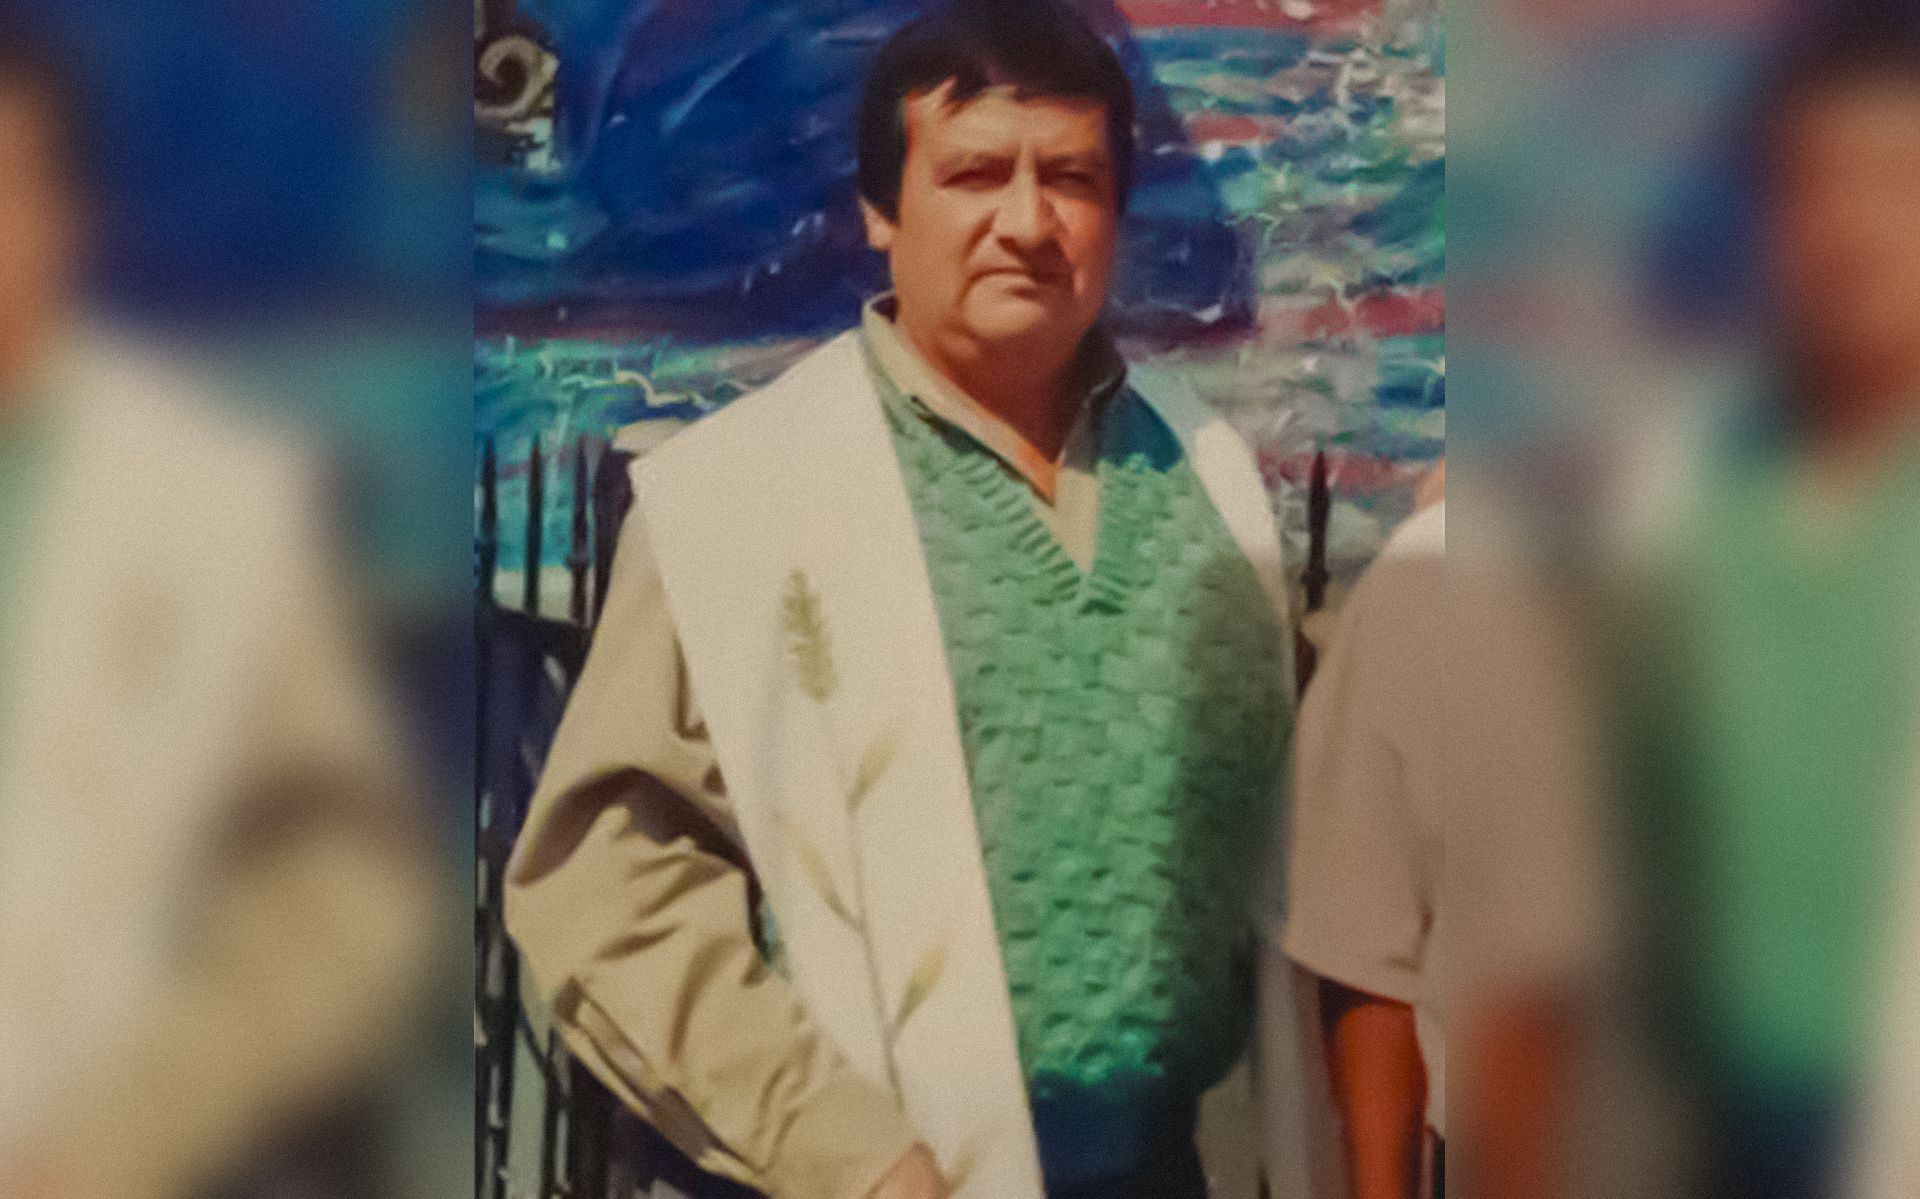 Hallan a sacerdote mexicano muerto tras permanecer cinco días extraviado